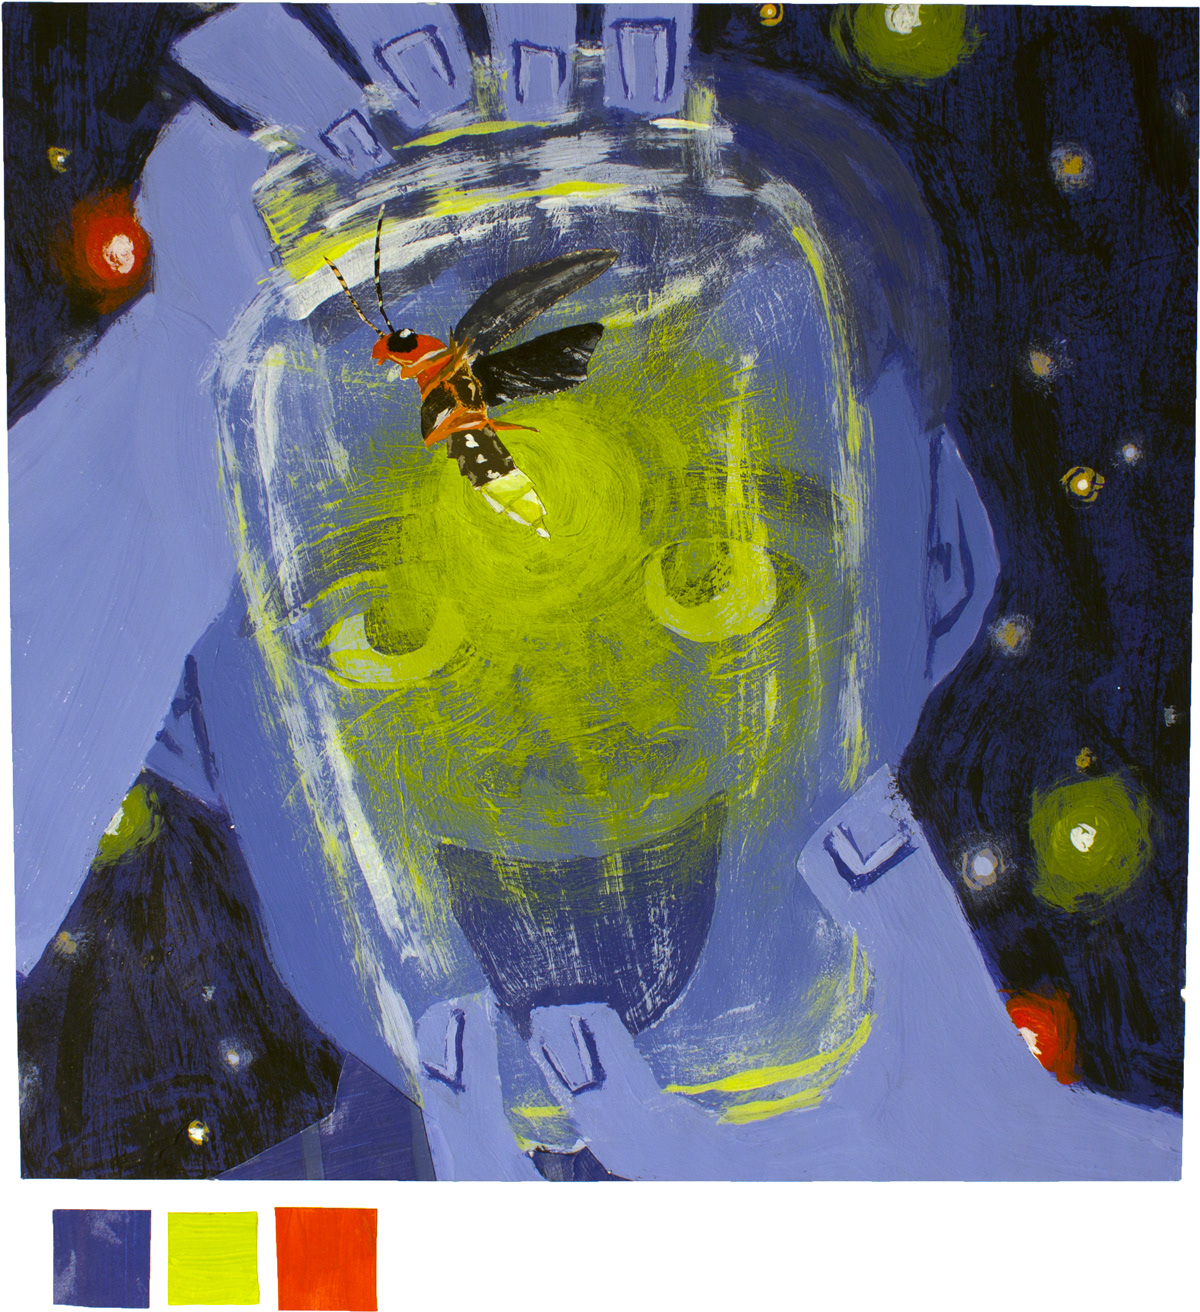 jlefevre jamie lefevre lefevre firefly lightning bug Insects bugs children's illustration children